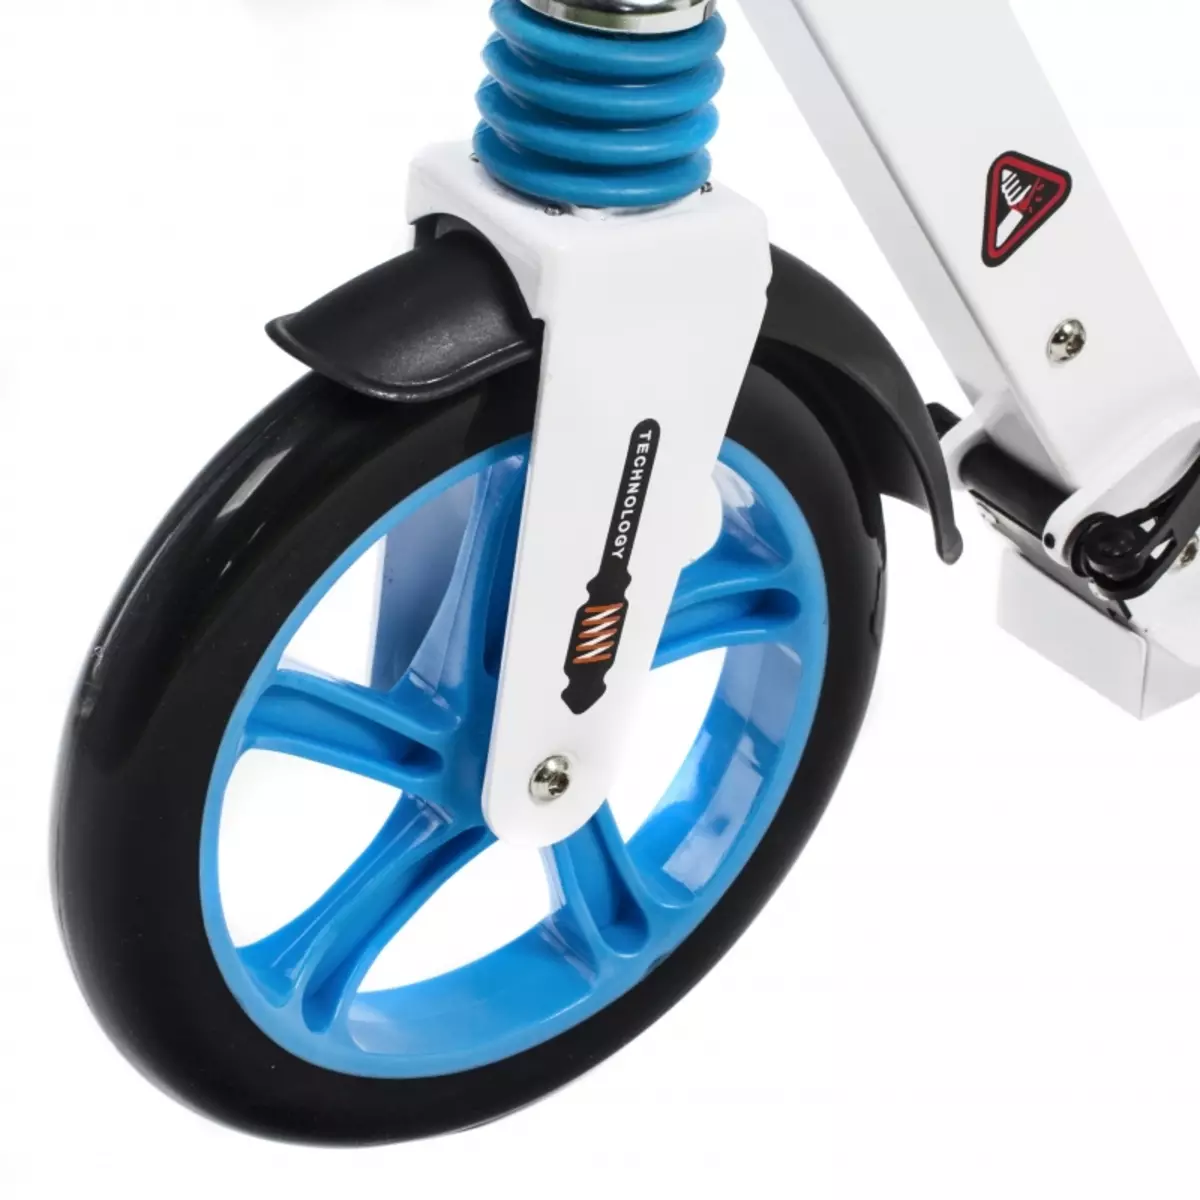 Scooter riteņi: modeļi ar diametru 100, 110, 175, 200 mm un citi. Gumijas un pneumokolu. Ko labāk izvēlēties? 8648_4